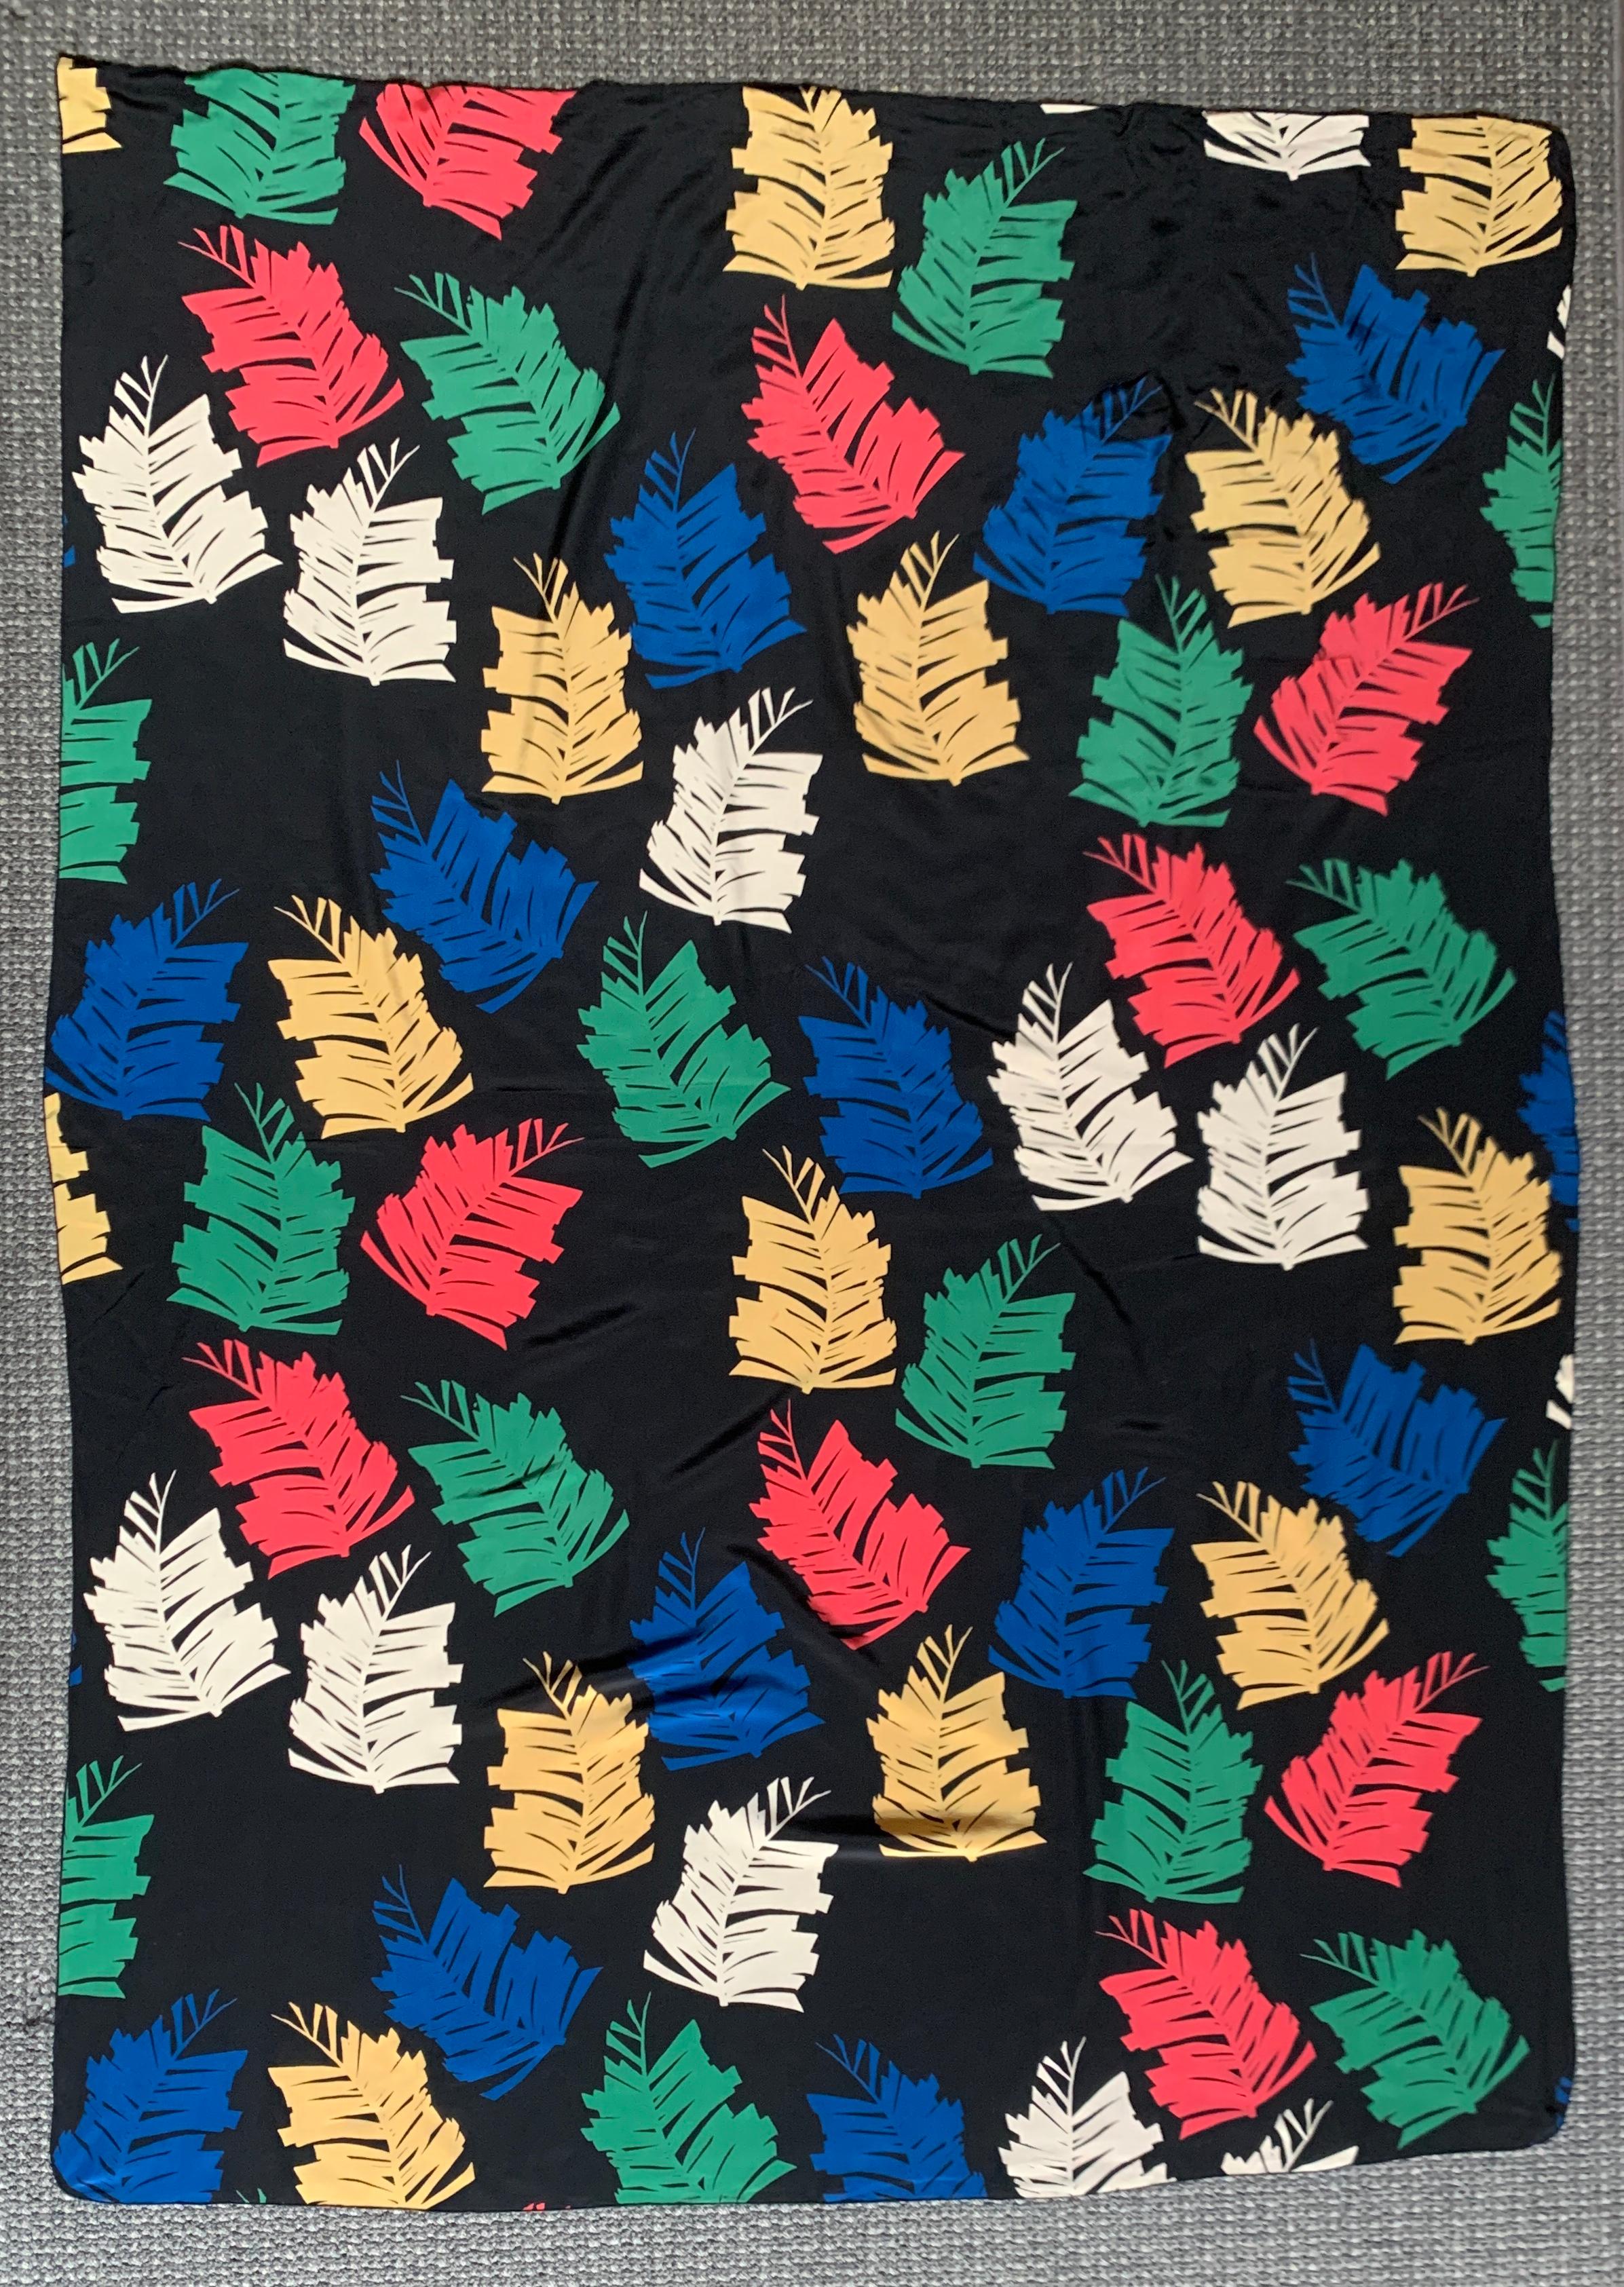 Énorme foulard vintage noir et multicolore imprimé fougère par Michael Vollbracht.  Fougères imprimées vertes, bleues, jaunes, rouges et crème. Sa grande taille en fait un excellent sarong ou une couverture de plage. 

Contenu non répertorié,